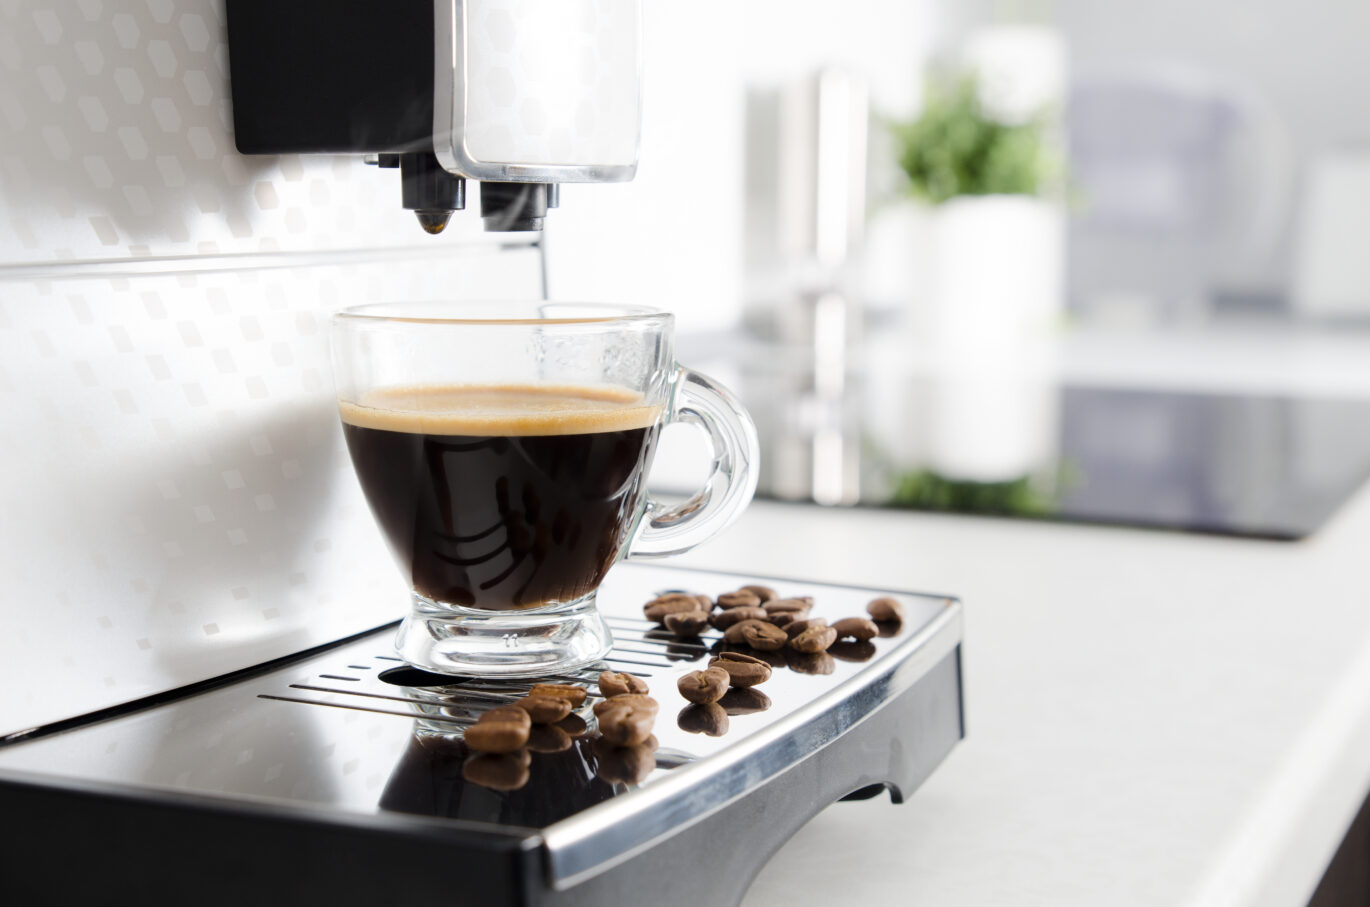 Espresso wordt gezet door een van de beste espressomachines van 2022. IHet glas vult zich met lekkere espresso, terwijl er een paar bonen naast het glas liggen